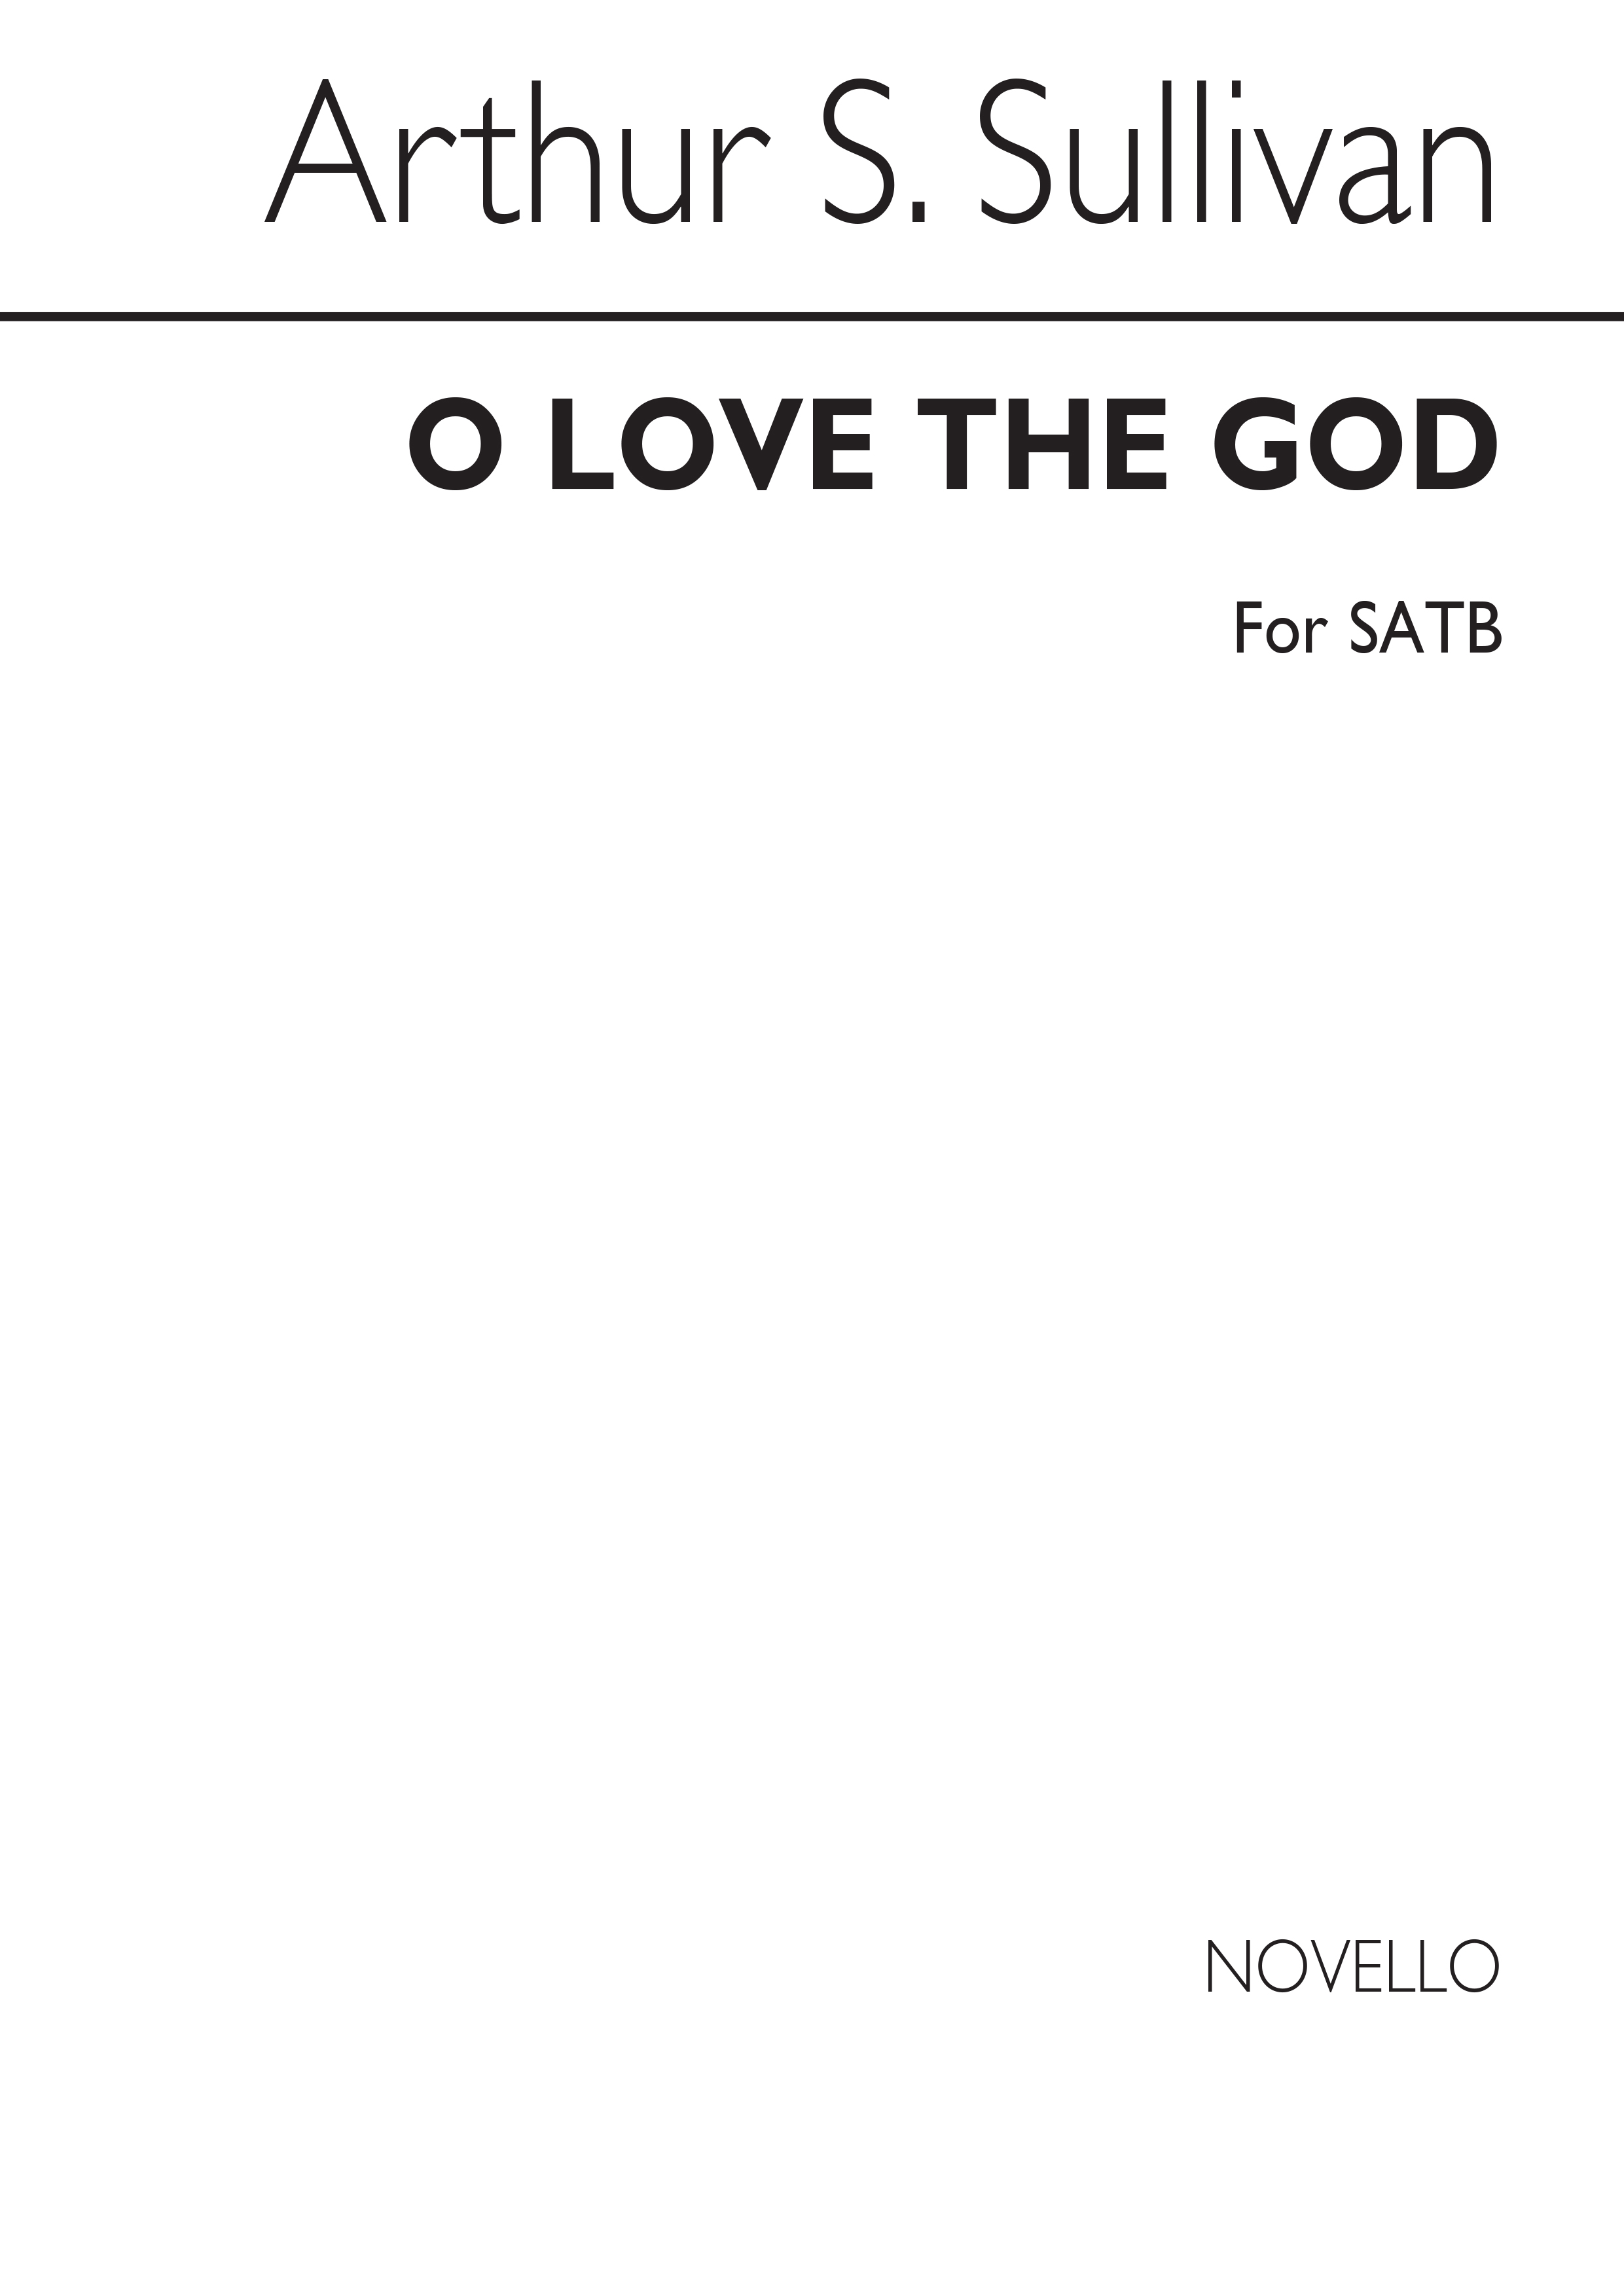 Arthur Seymour Sullivan: O Love The Lord: SATB: Vocal Score